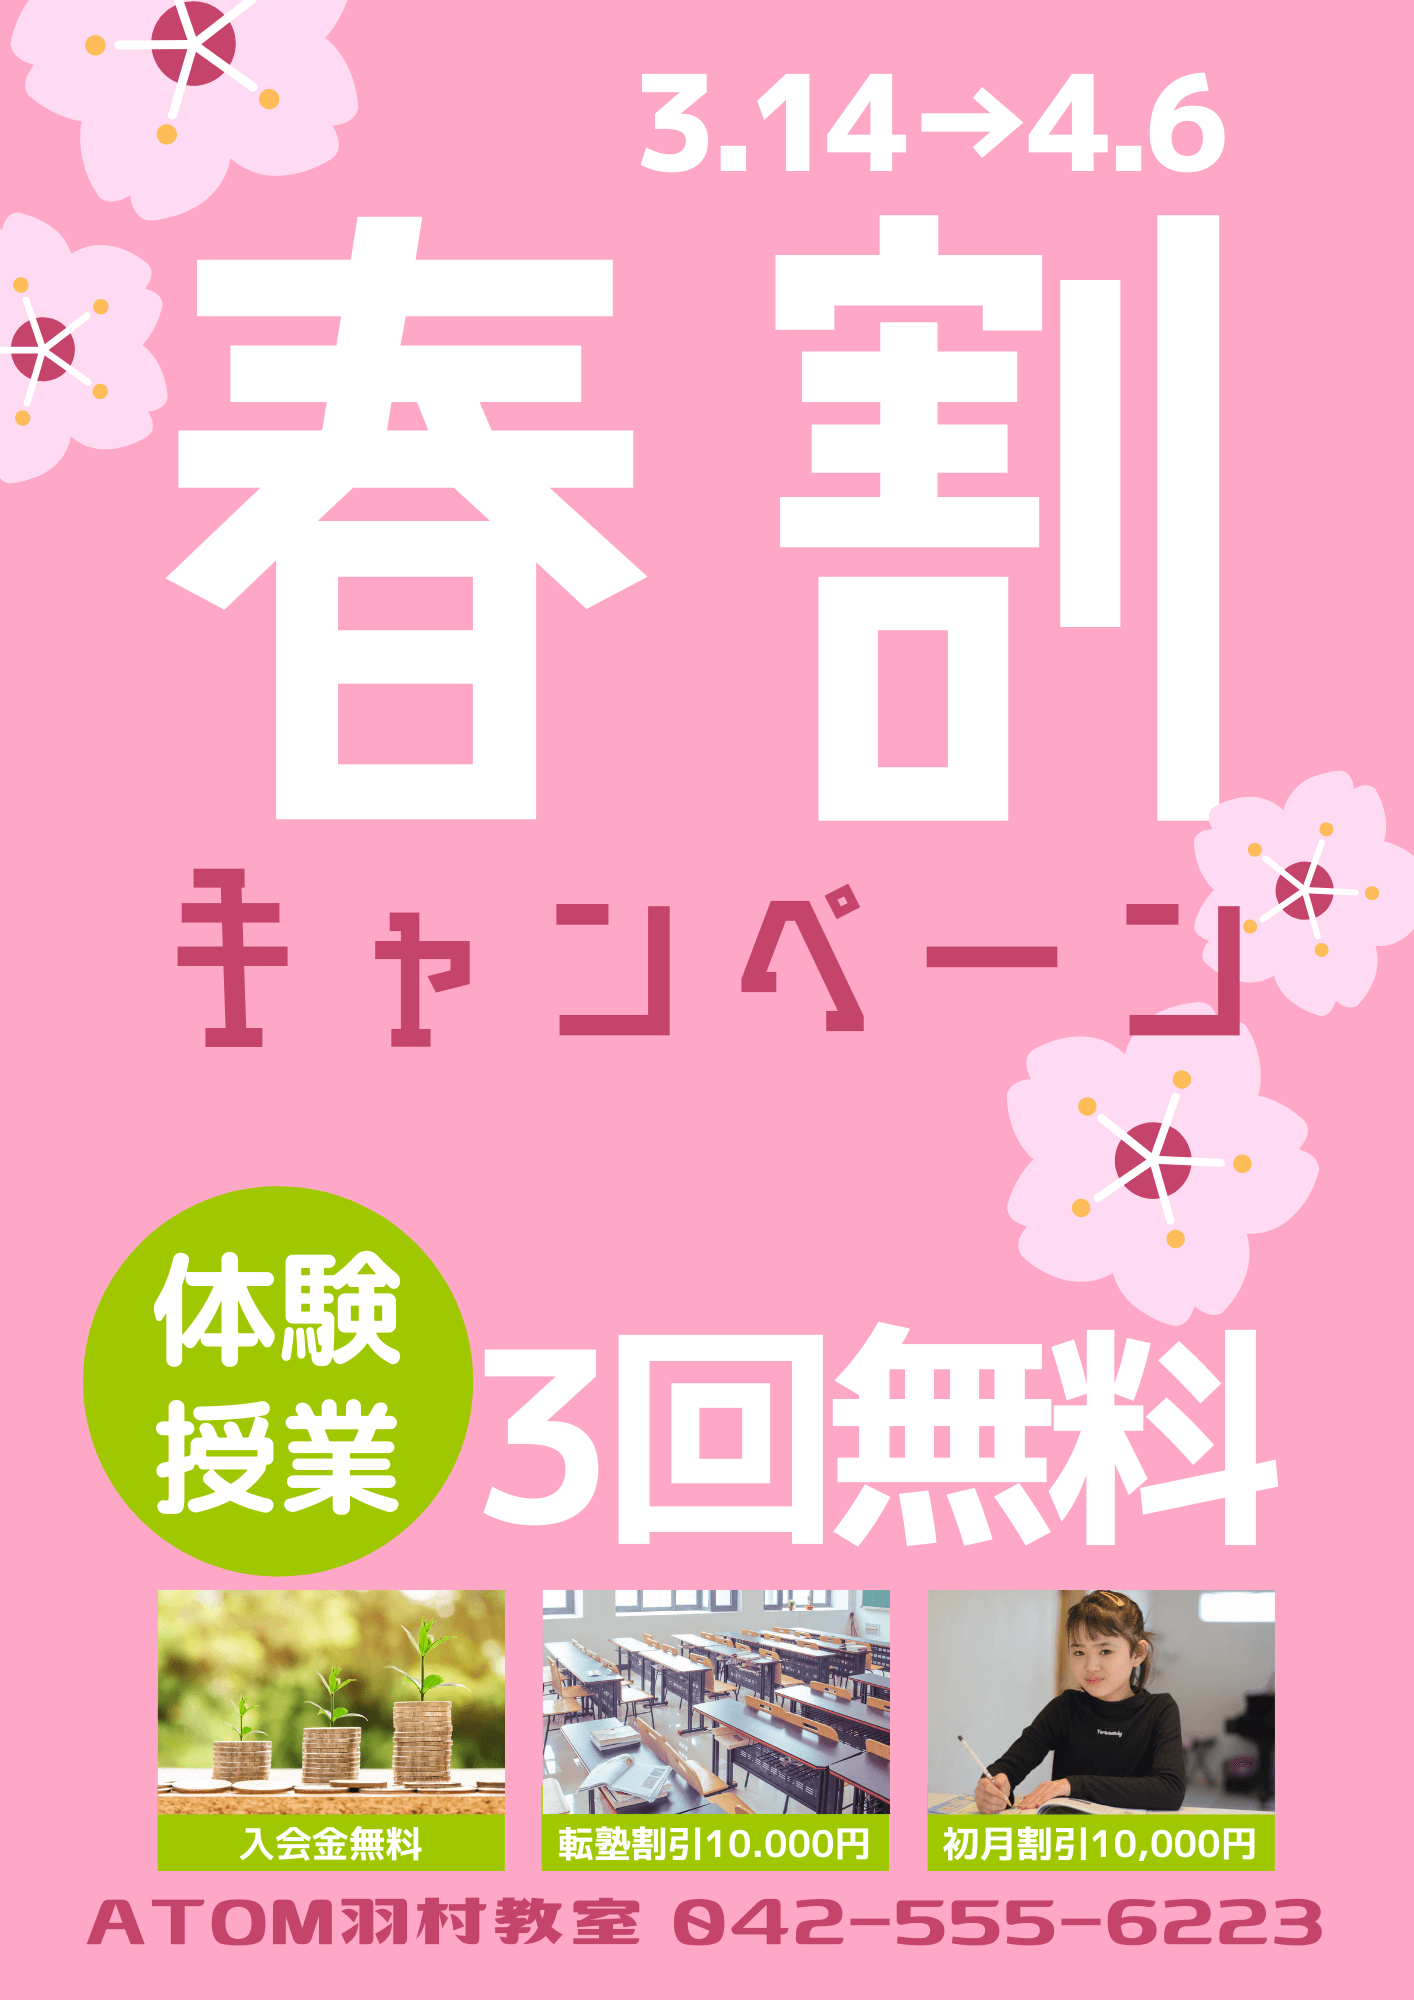 羽村教室春のキャンペーン